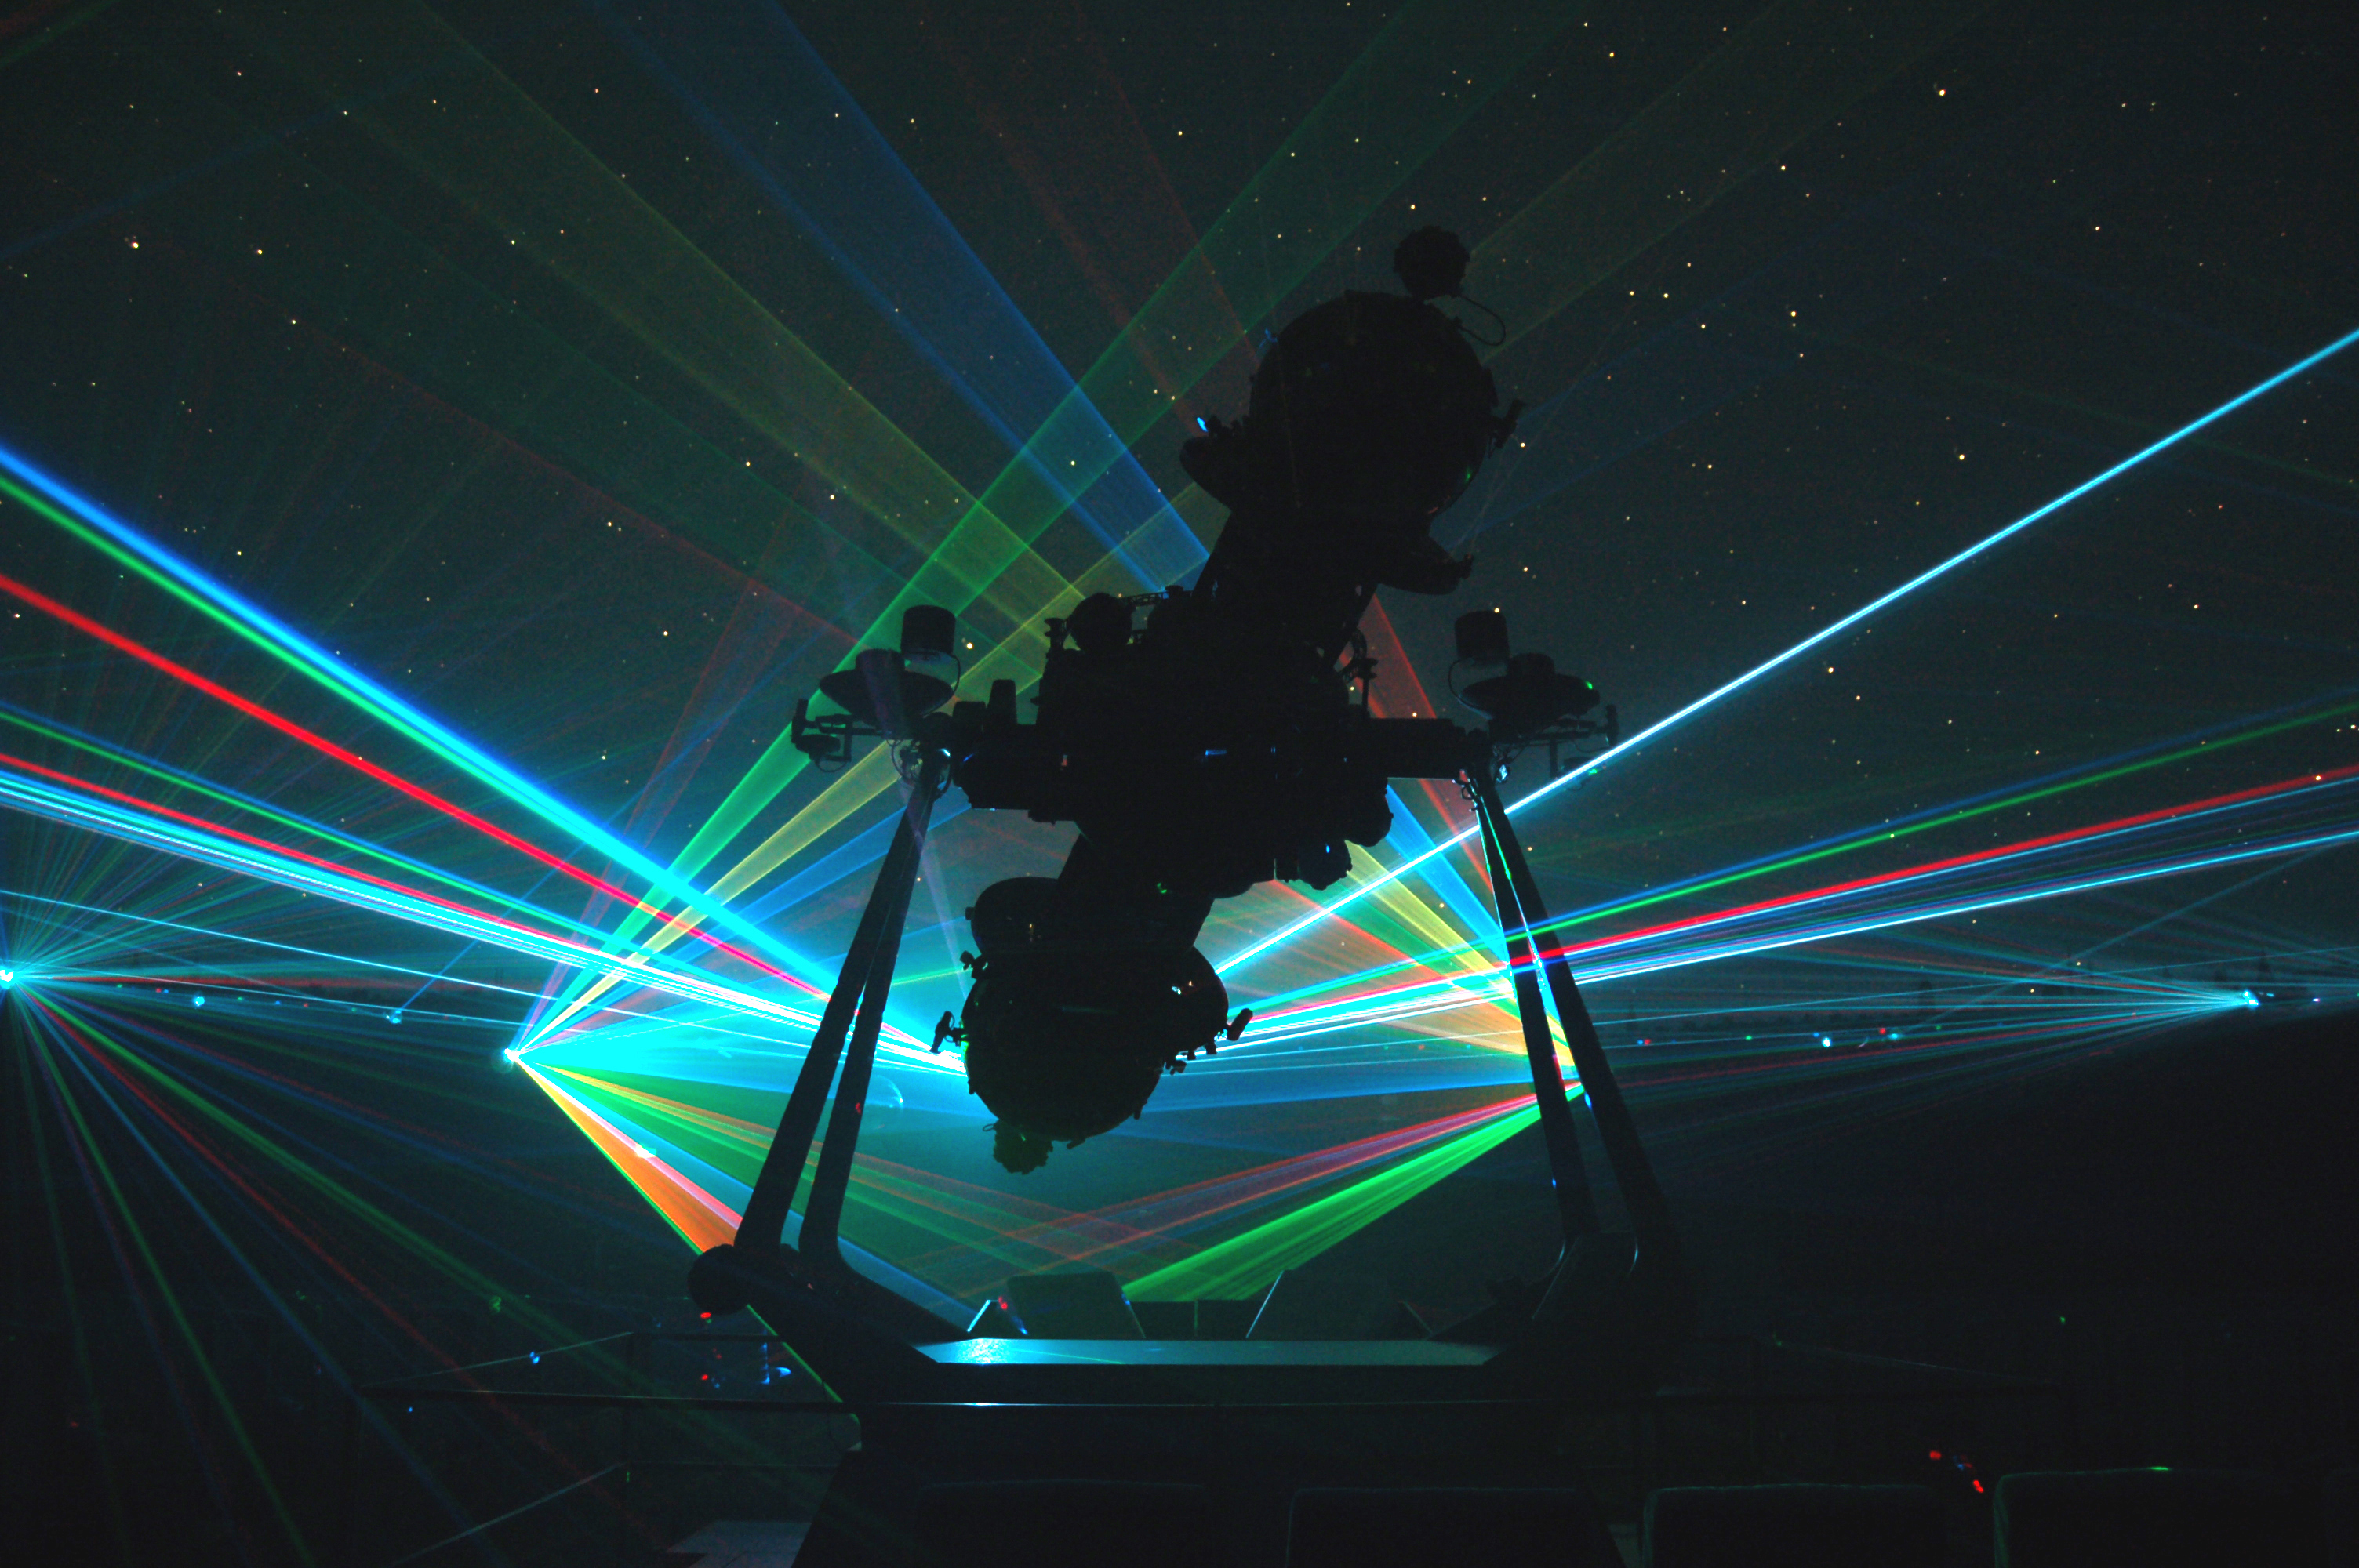 PAI planetarium lasershow